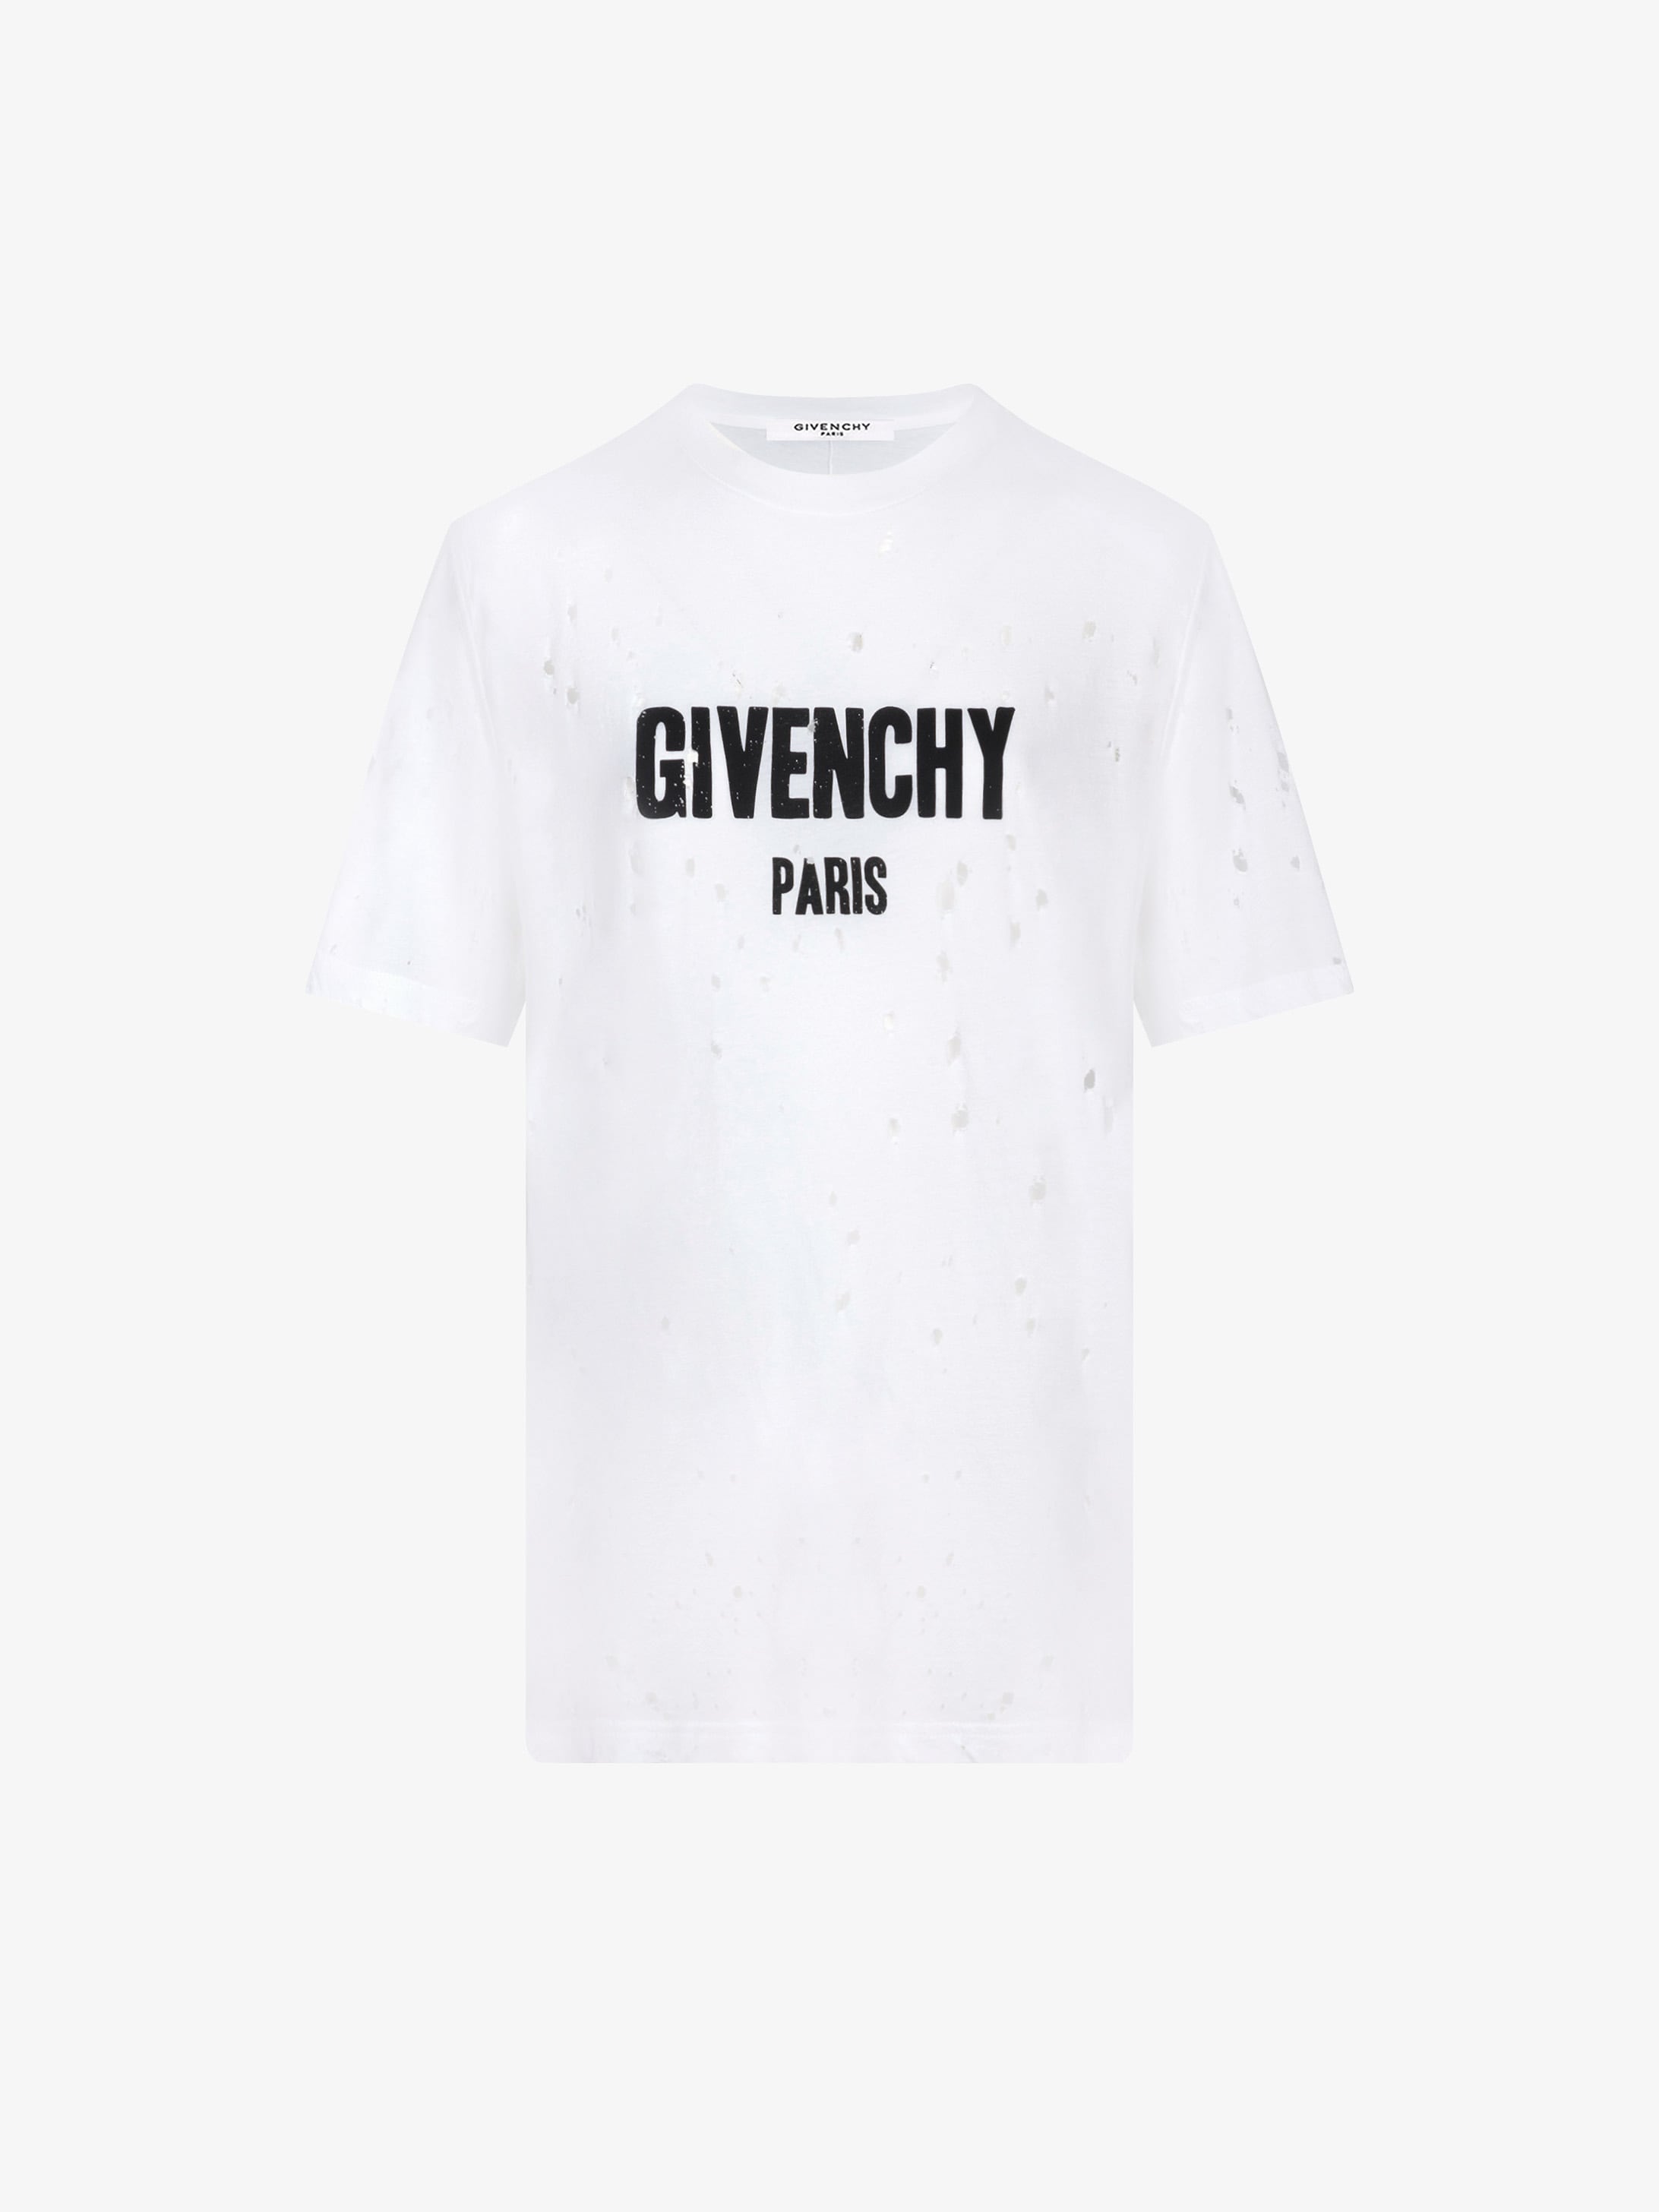 Buy givenchy paris shirt - 57% OFF!